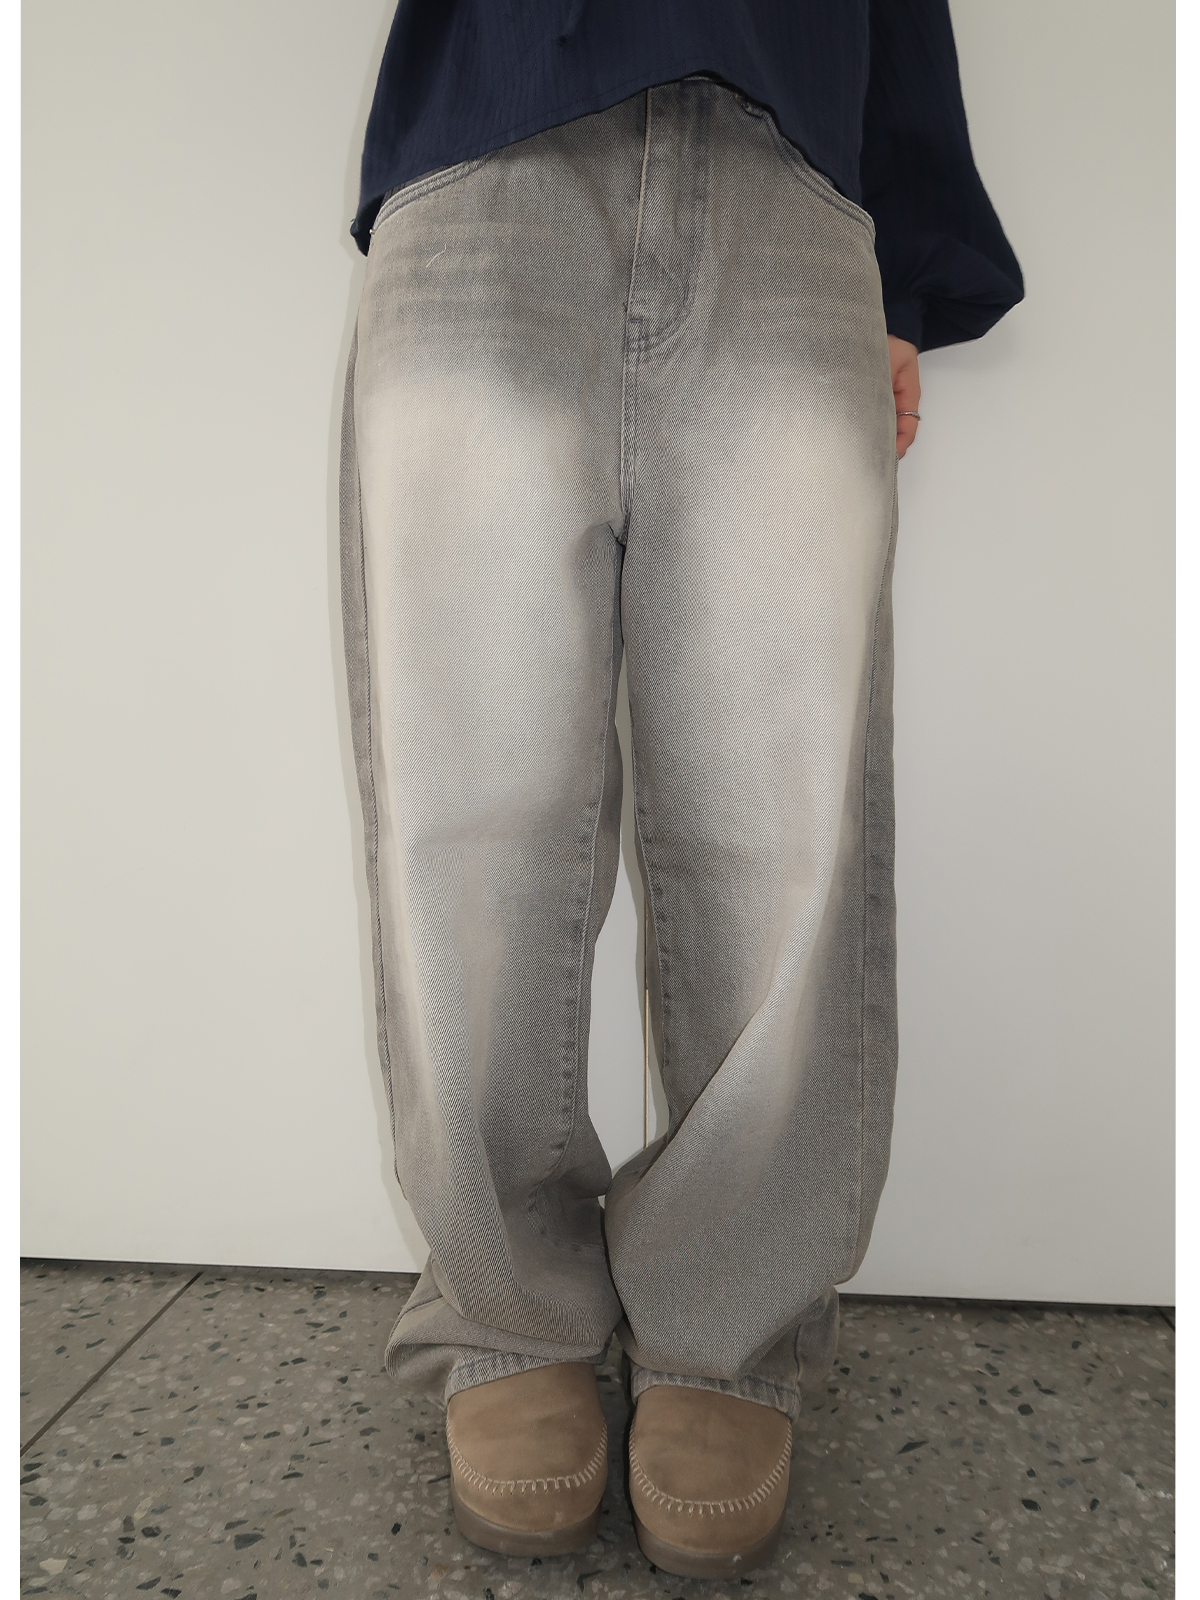 tom gray pants